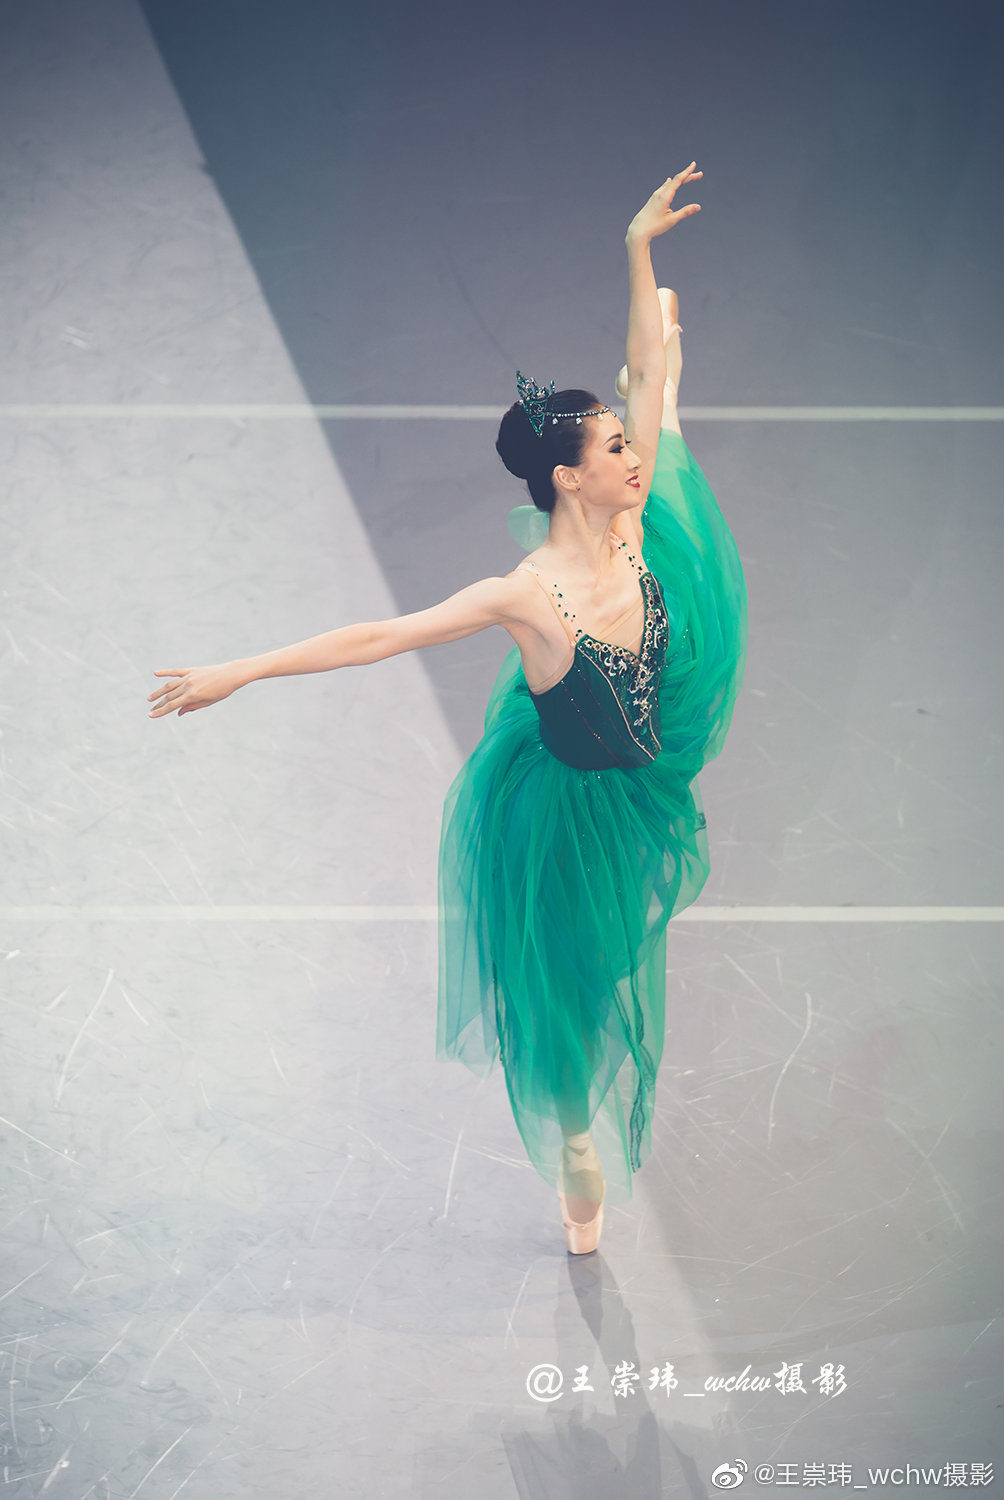 中央芭蕾舞团女演员图片